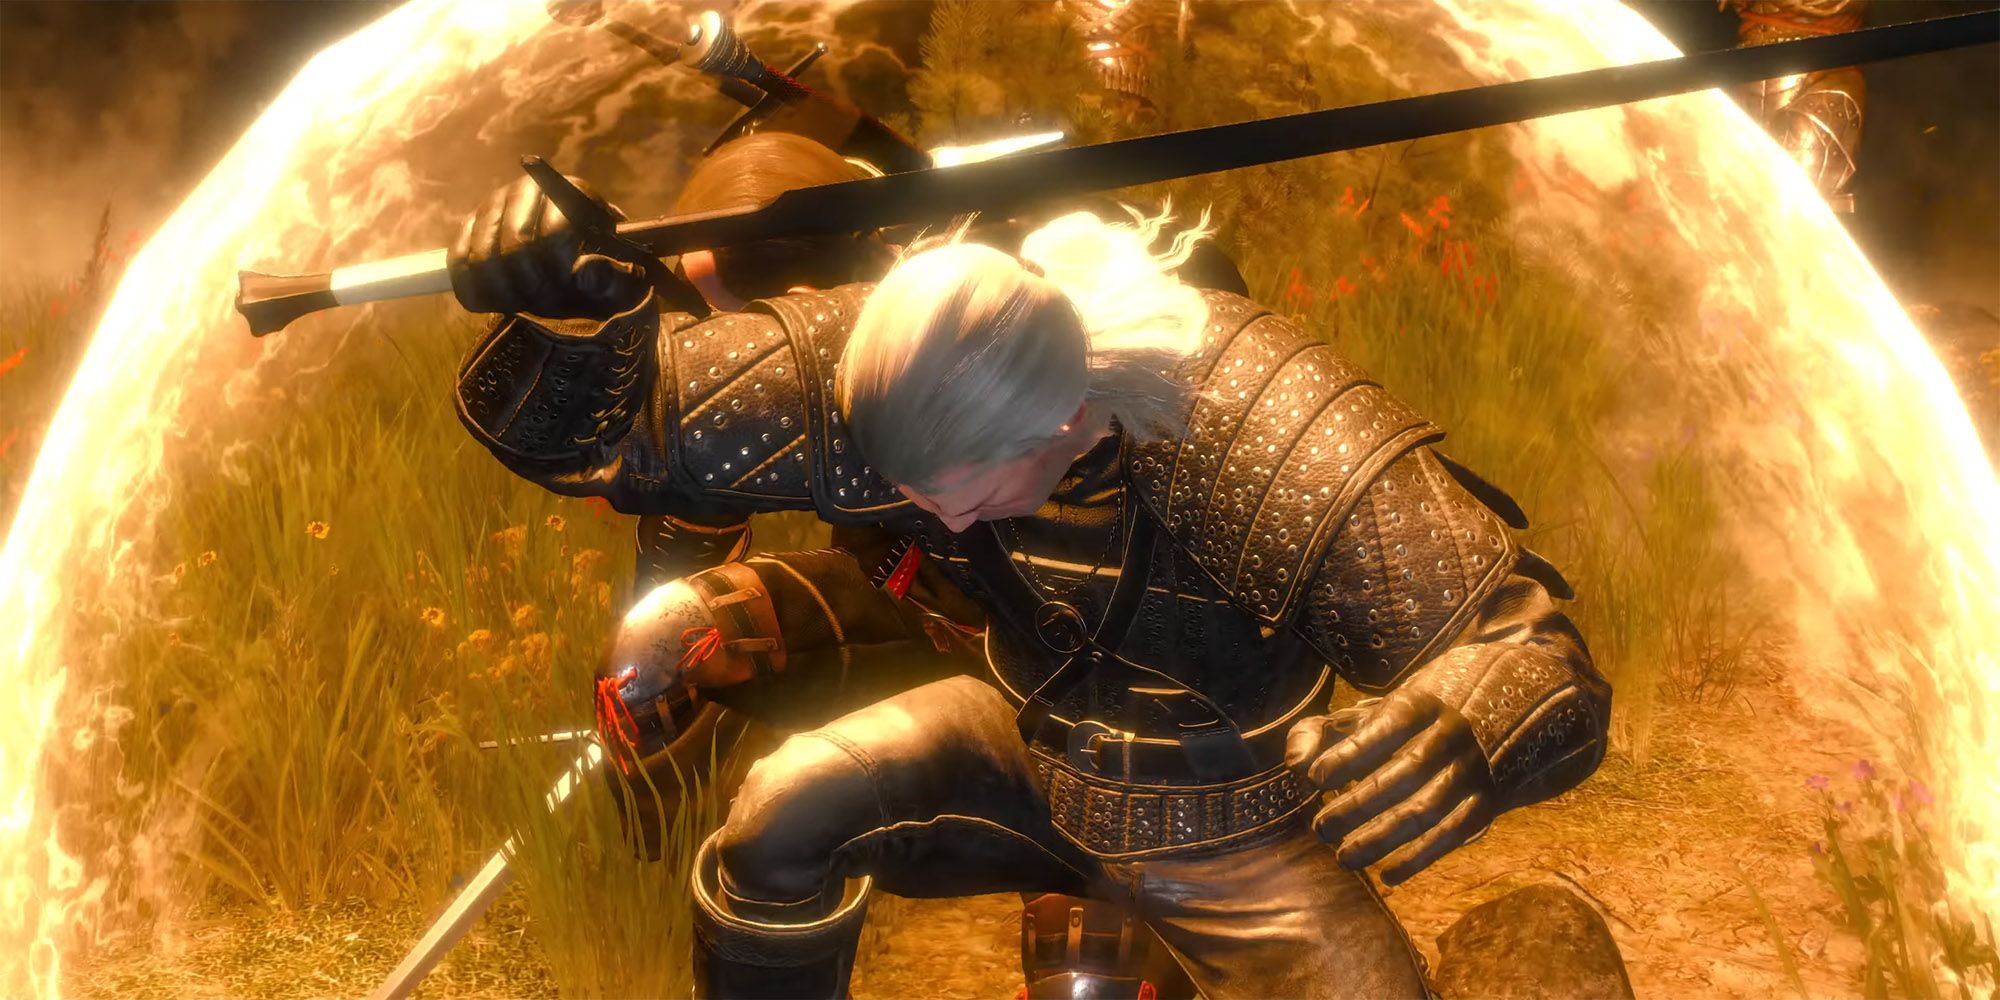 Witcher 3 - Geralt Using Quen Right Before Quen Discharge